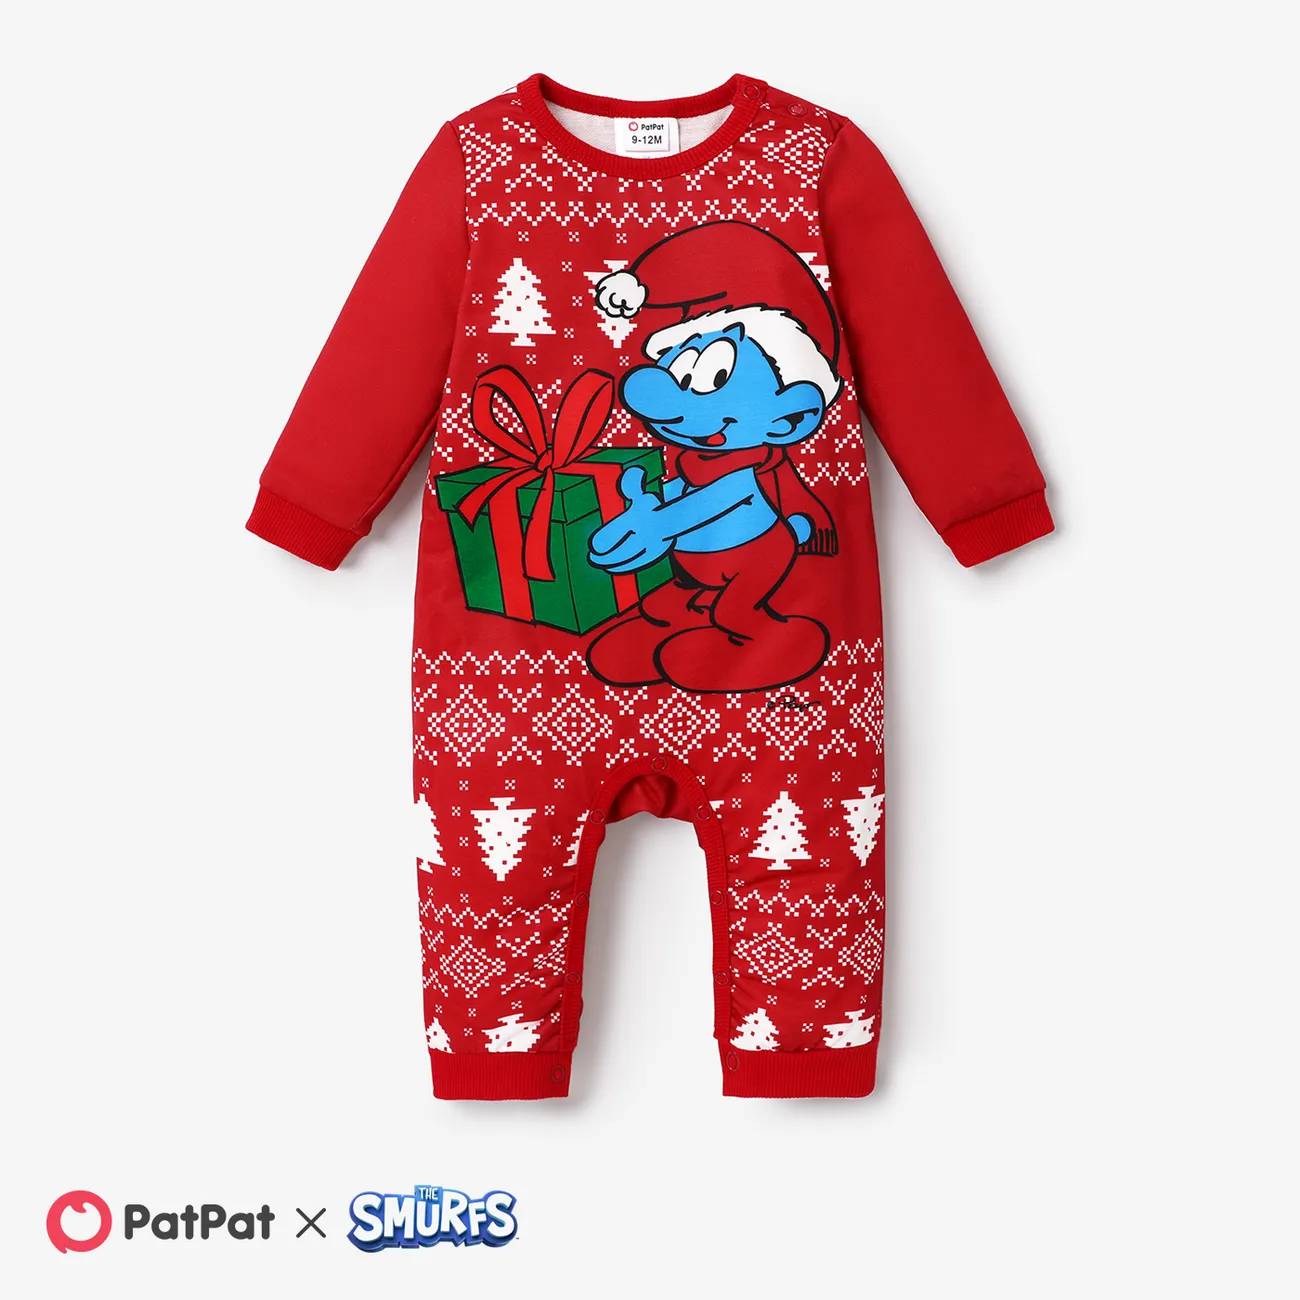 The Smurfs Family Matching Christmas Character & Snowflake Print Long-sleeve Top   big image 1